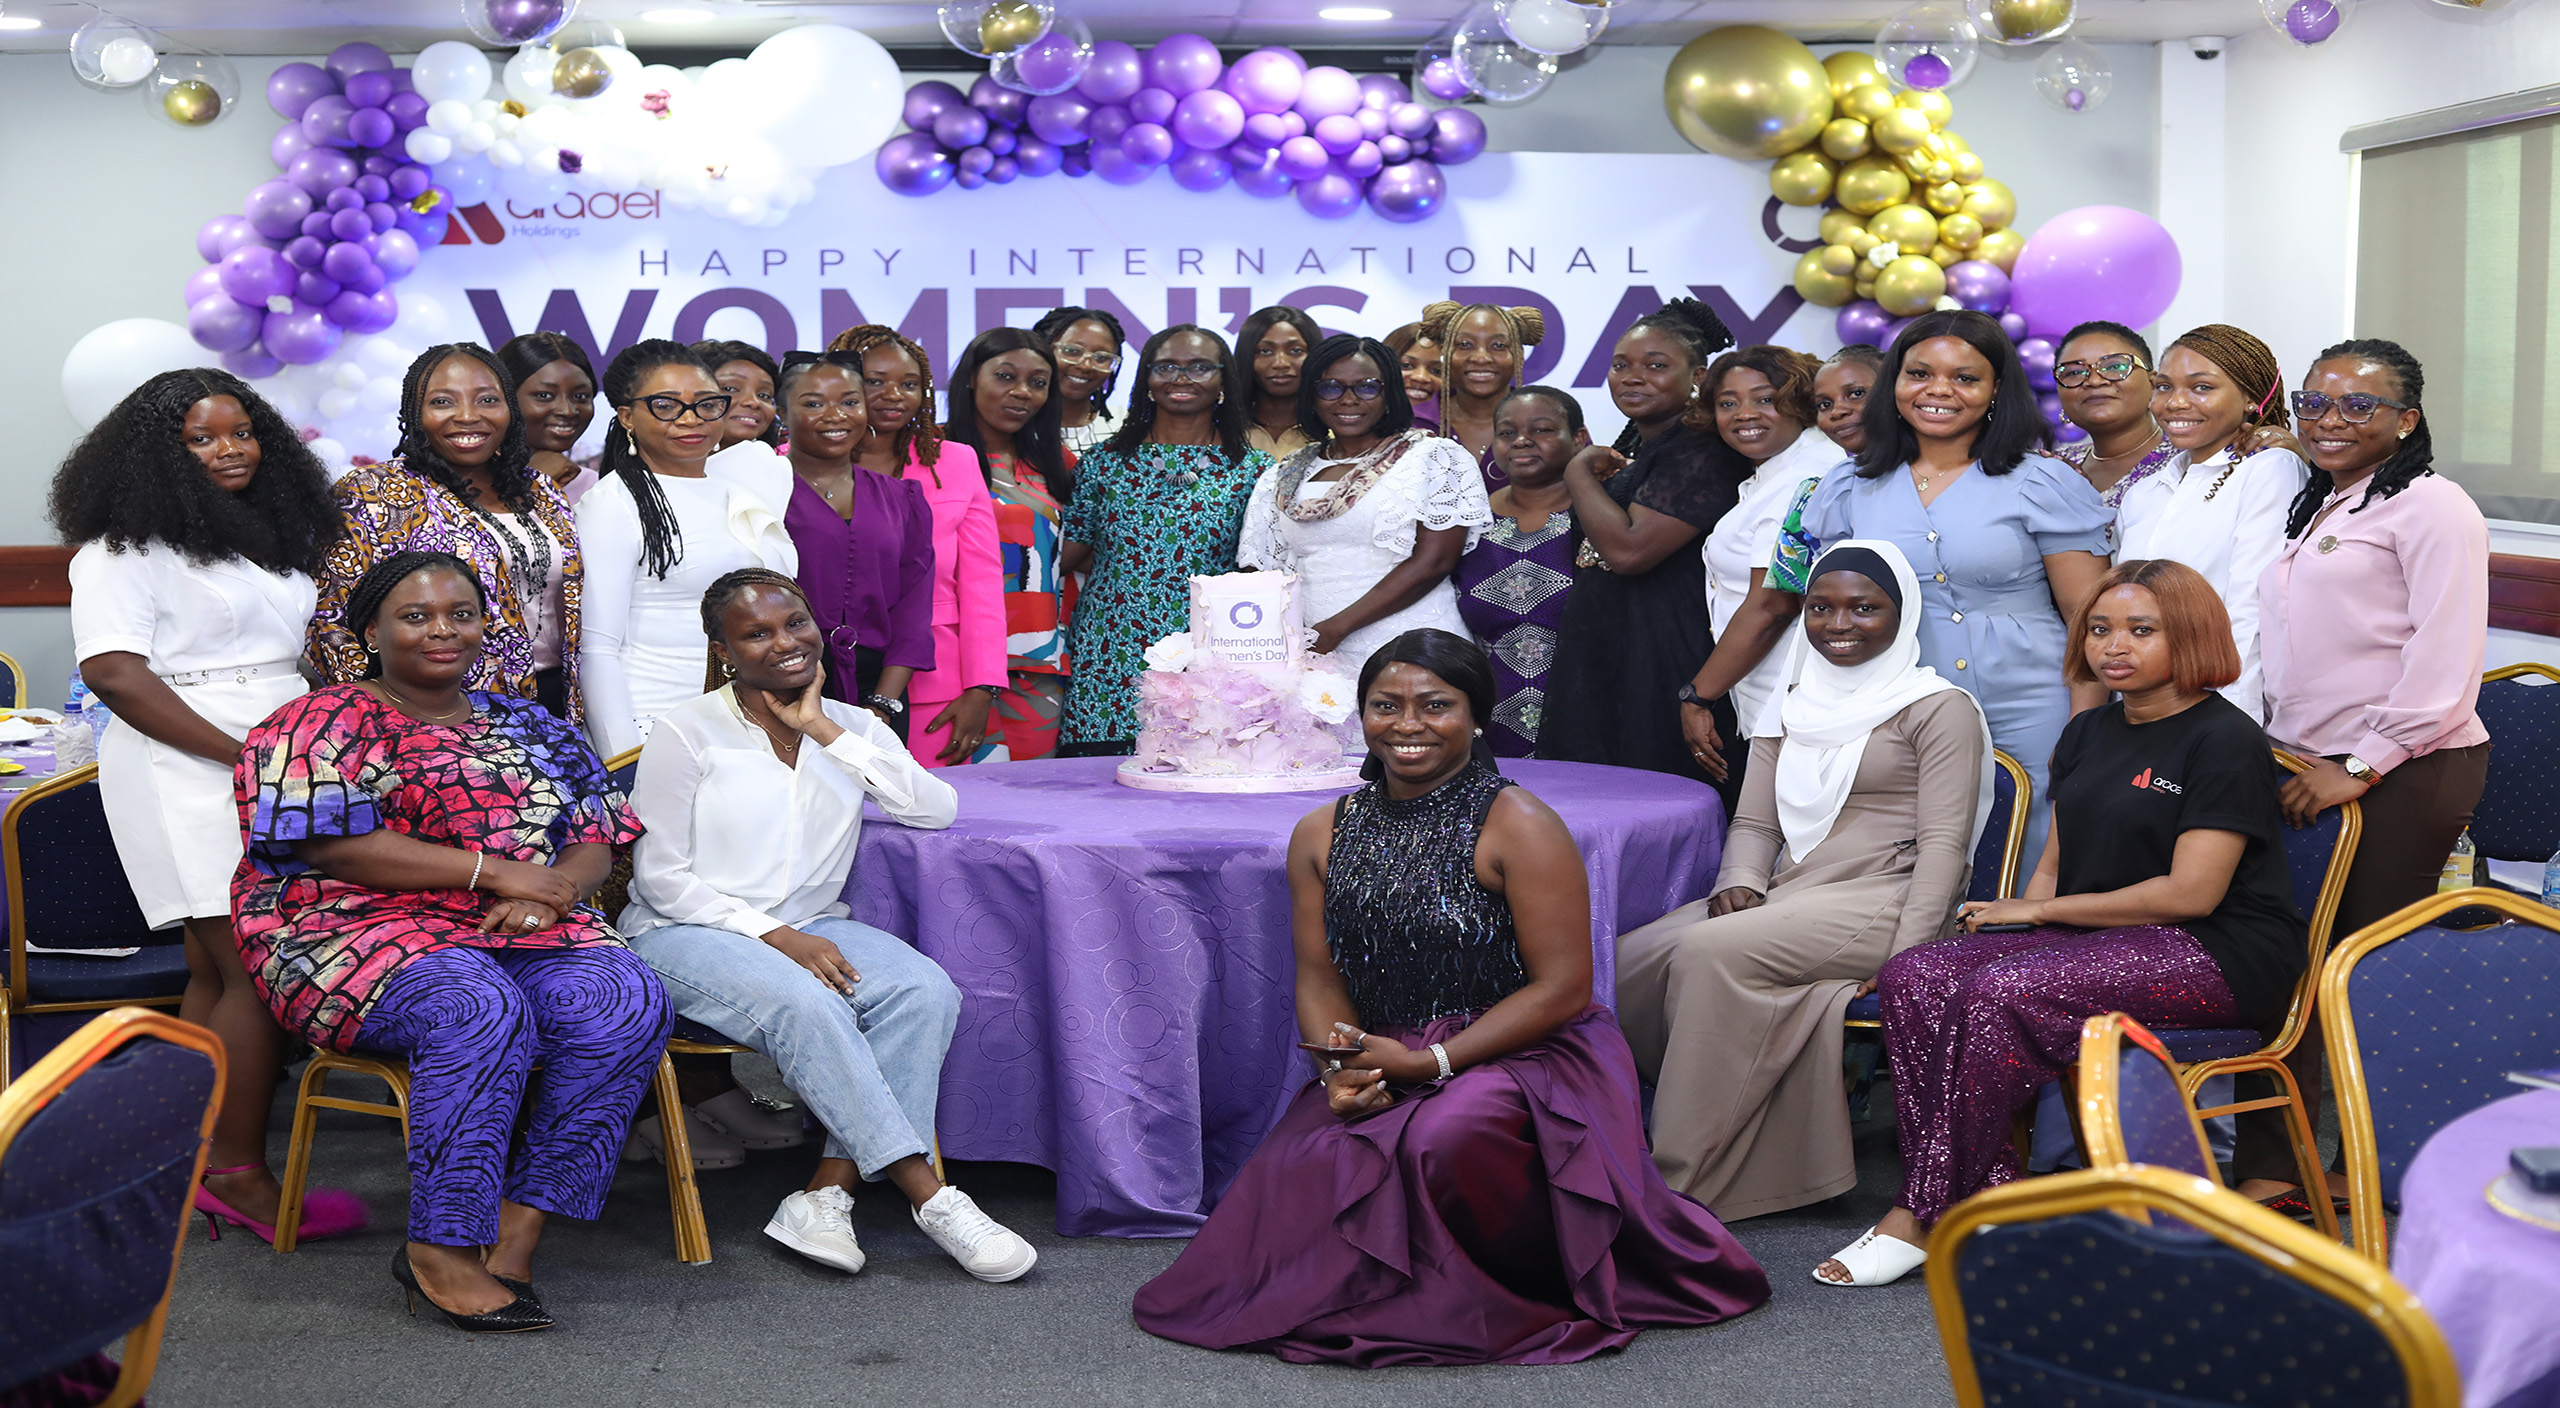 Aradel Holdings Plc Celebrates Female Workforce on #IWD